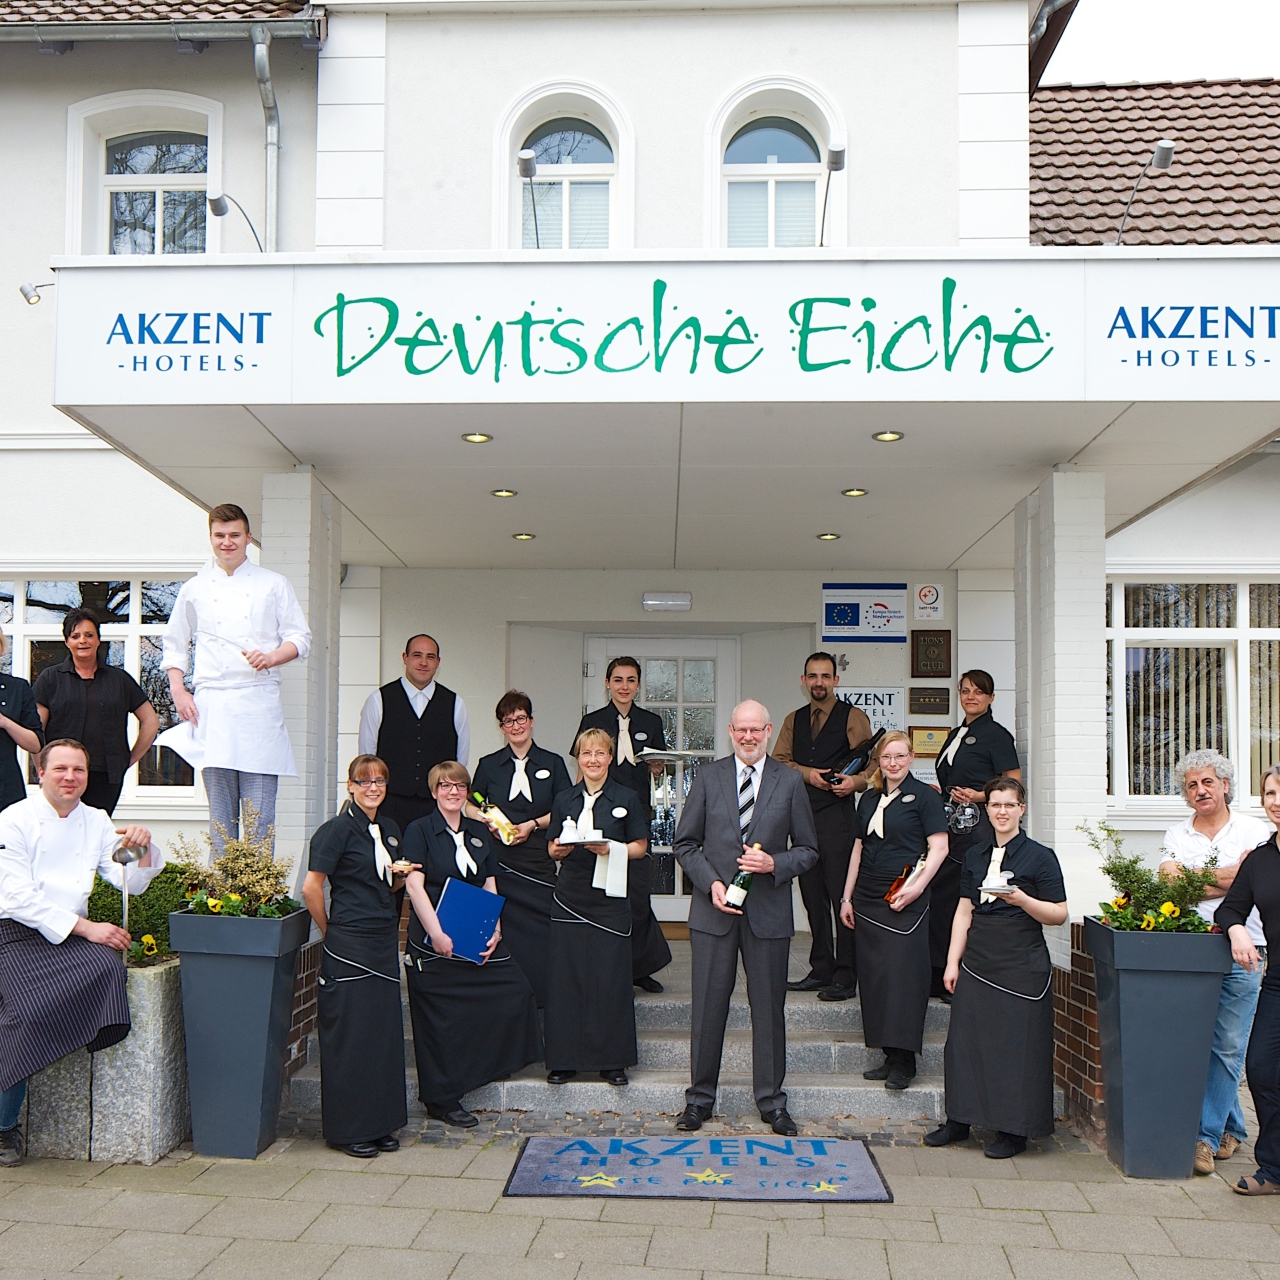 Akzent Hotel Deutsche Eiche in Uelzen bei HRS günstig buchen